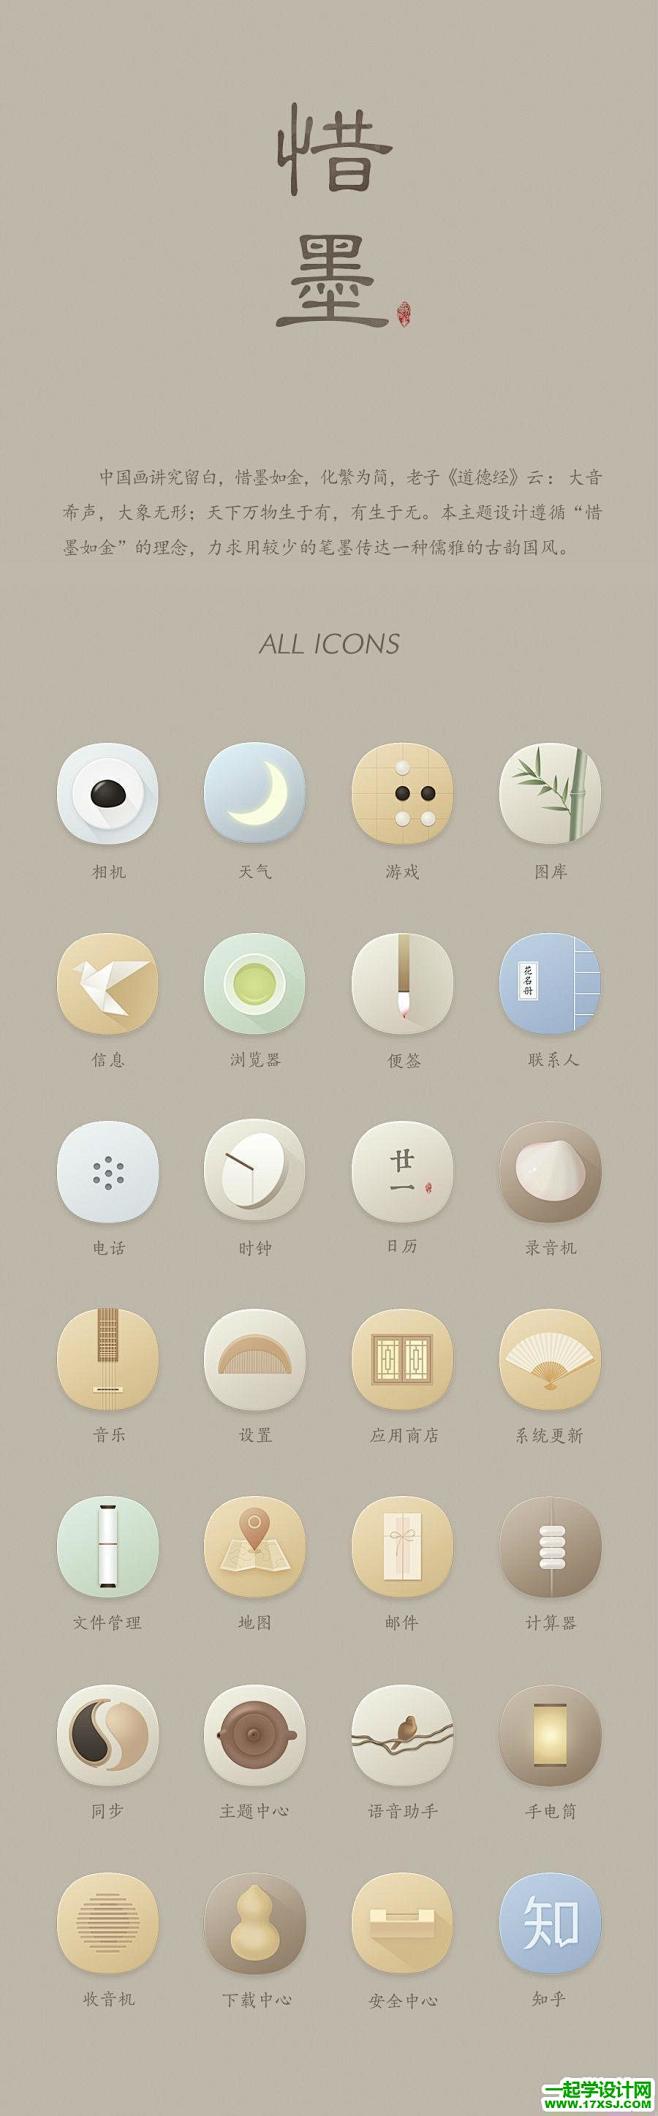 一套中国风UI主题图标设计欣赏